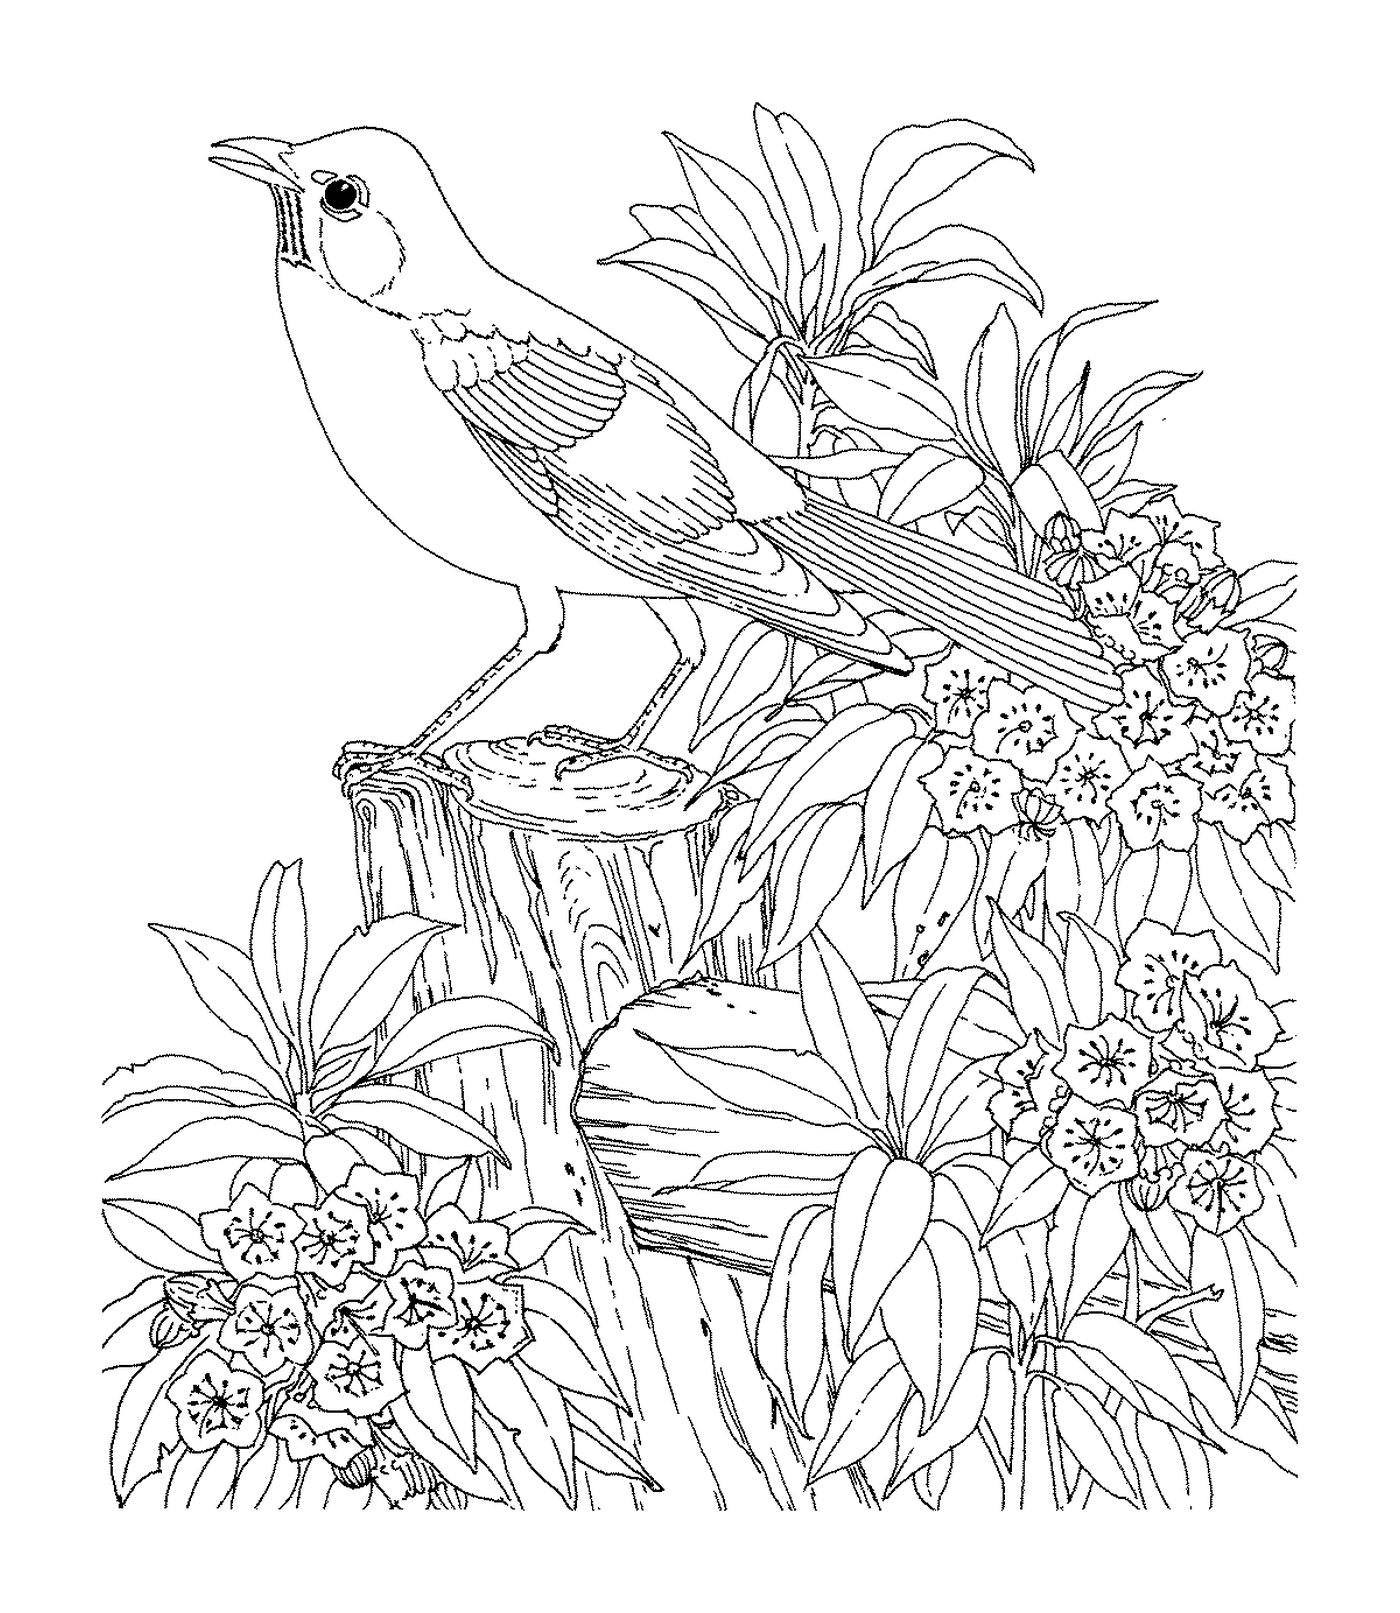   Un oiseau assis sur une branche 